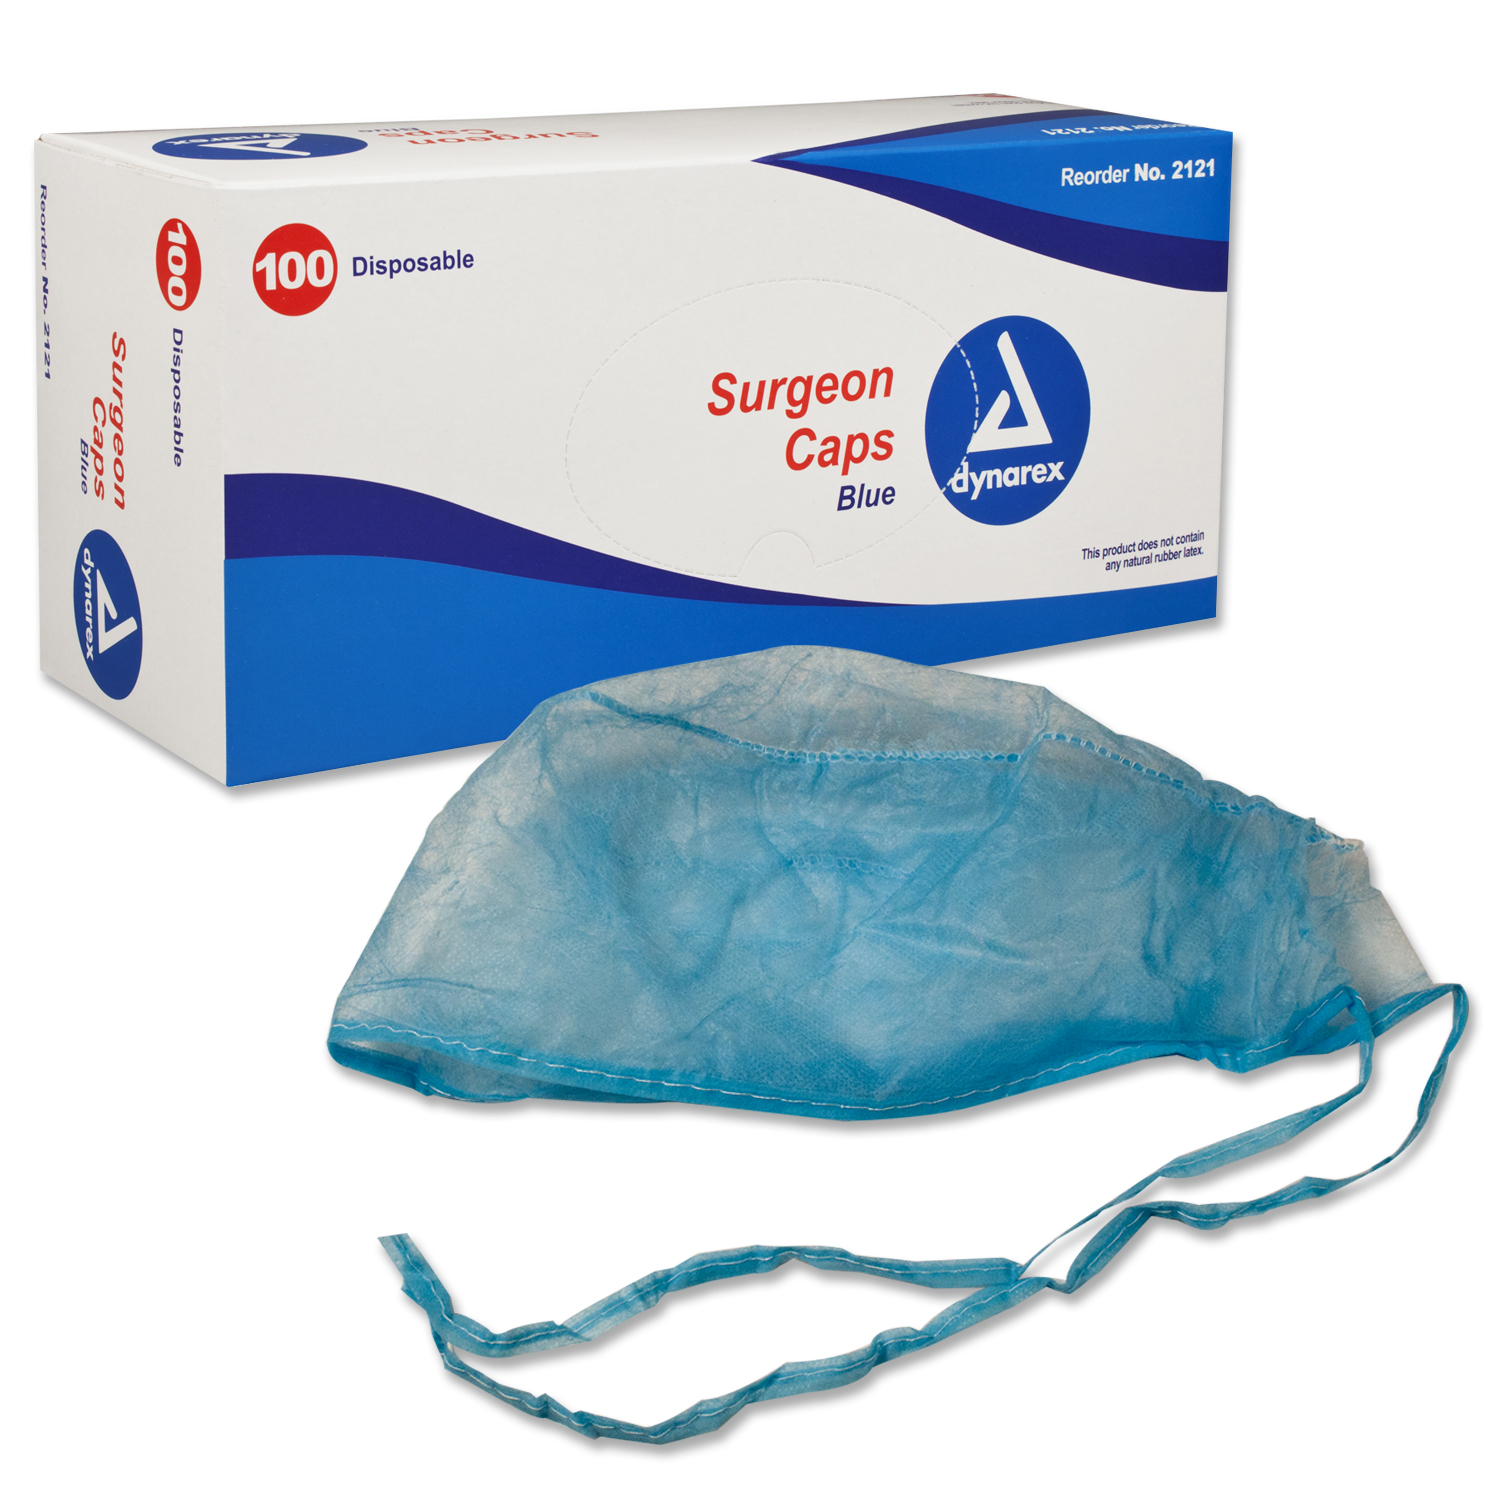 Surgeon Cap O.R., Blue